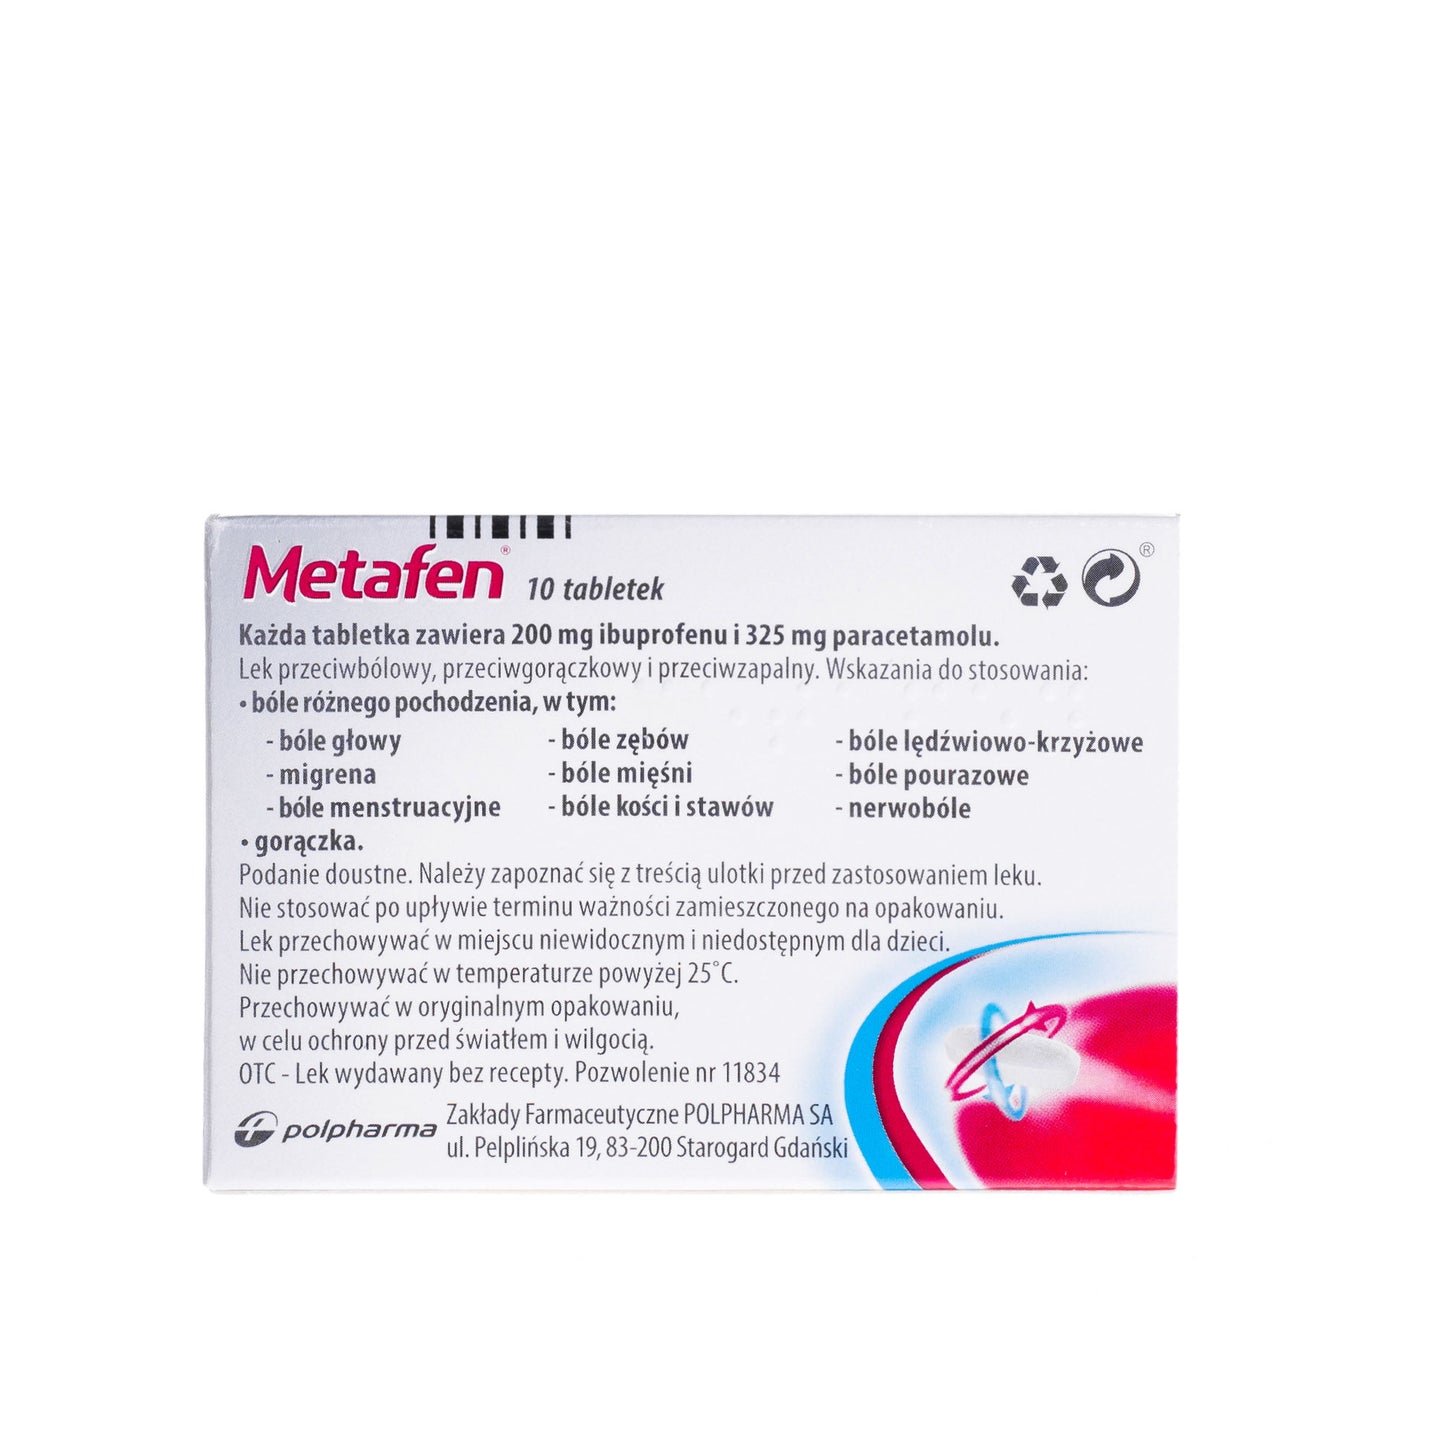 Metafen tablets